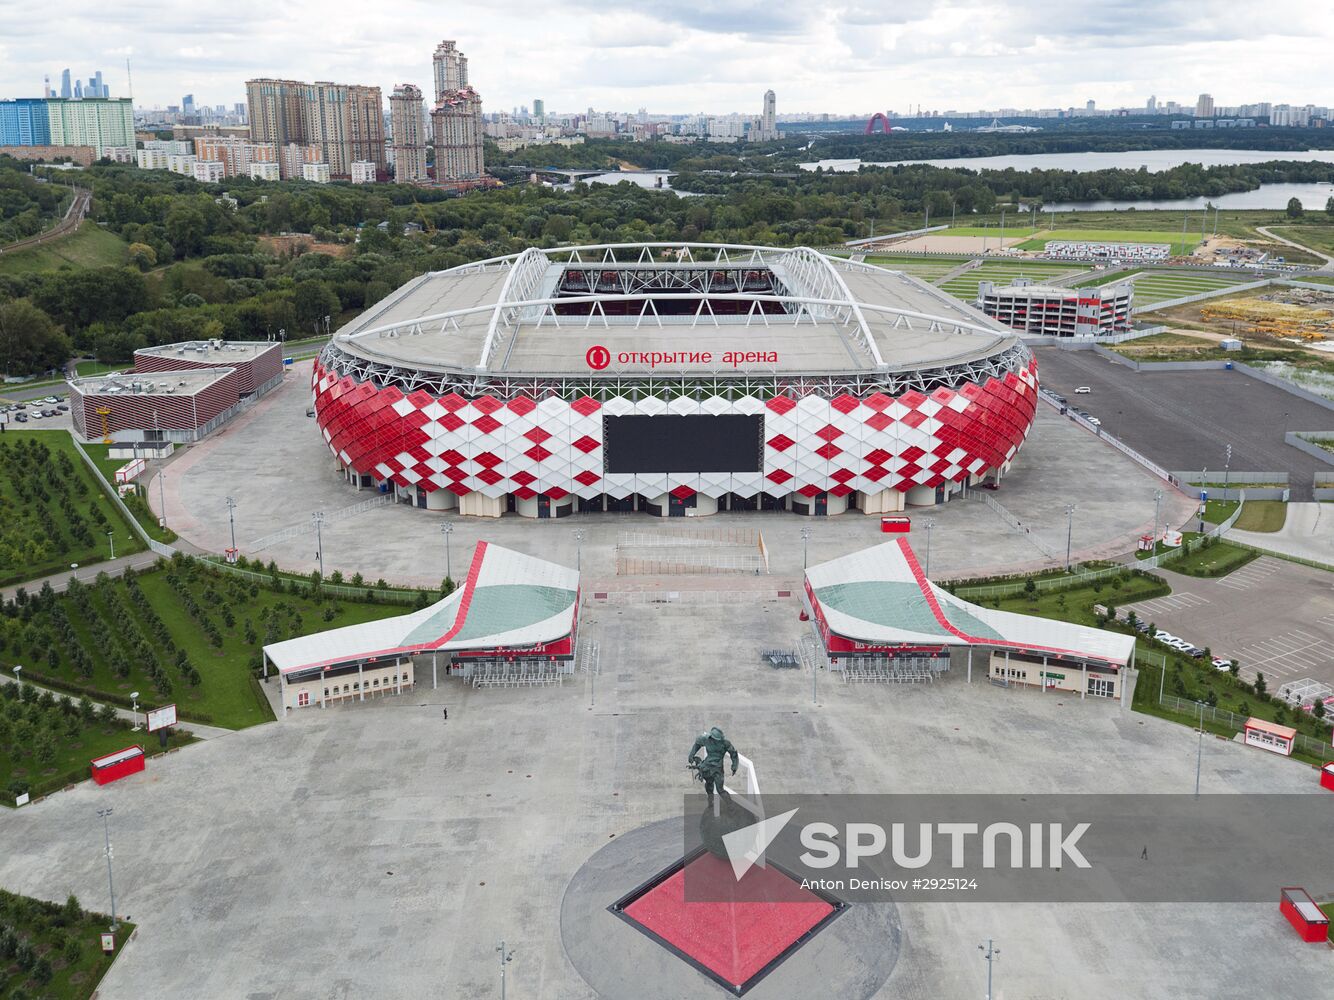 Otkrytiye Arena Stadium in Moscow